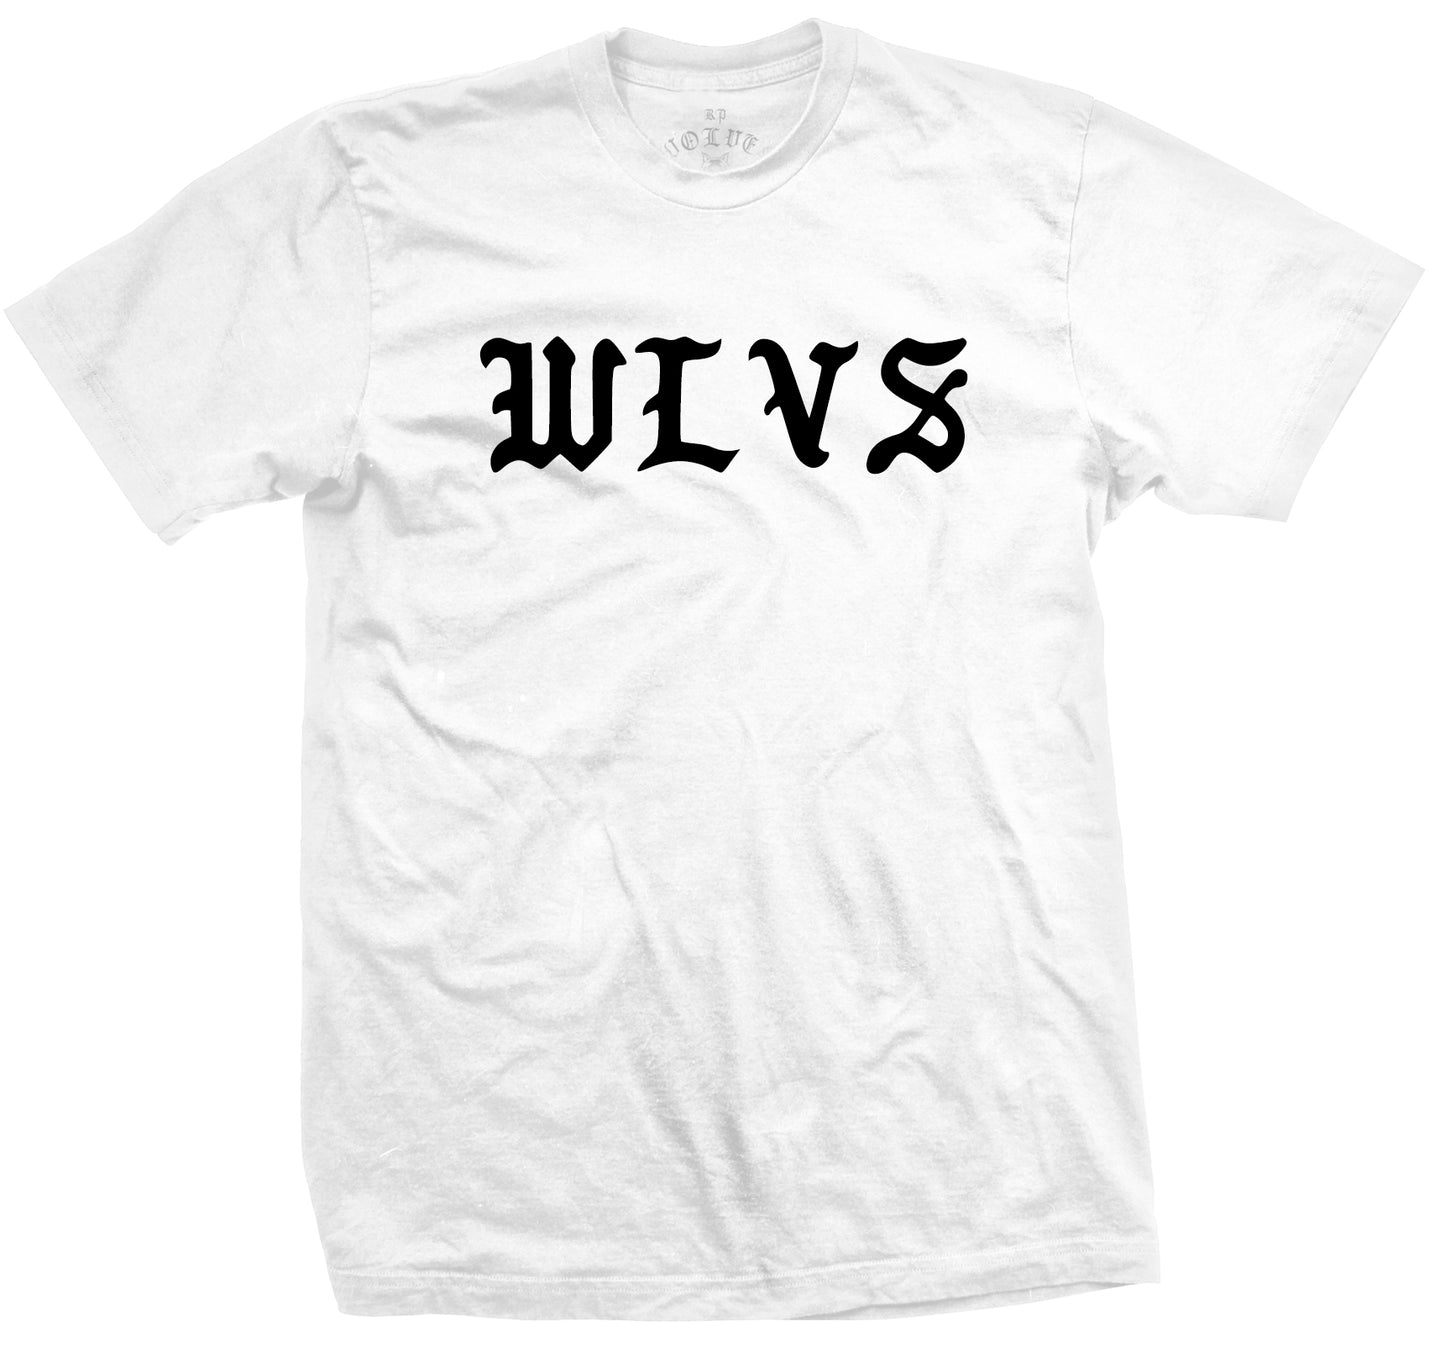 WLVS Tee - White